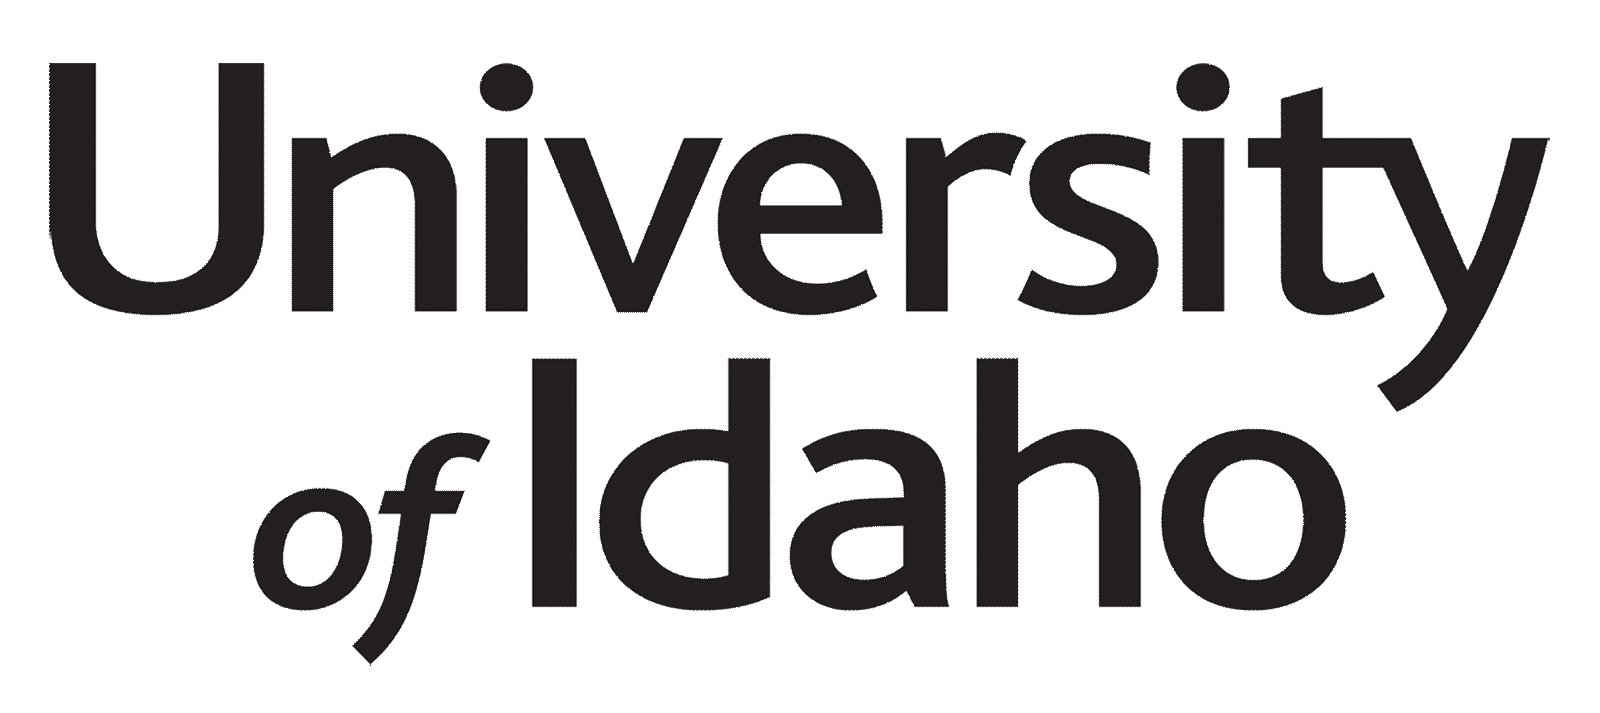 Idaho Logo - Logos | Idaho State University